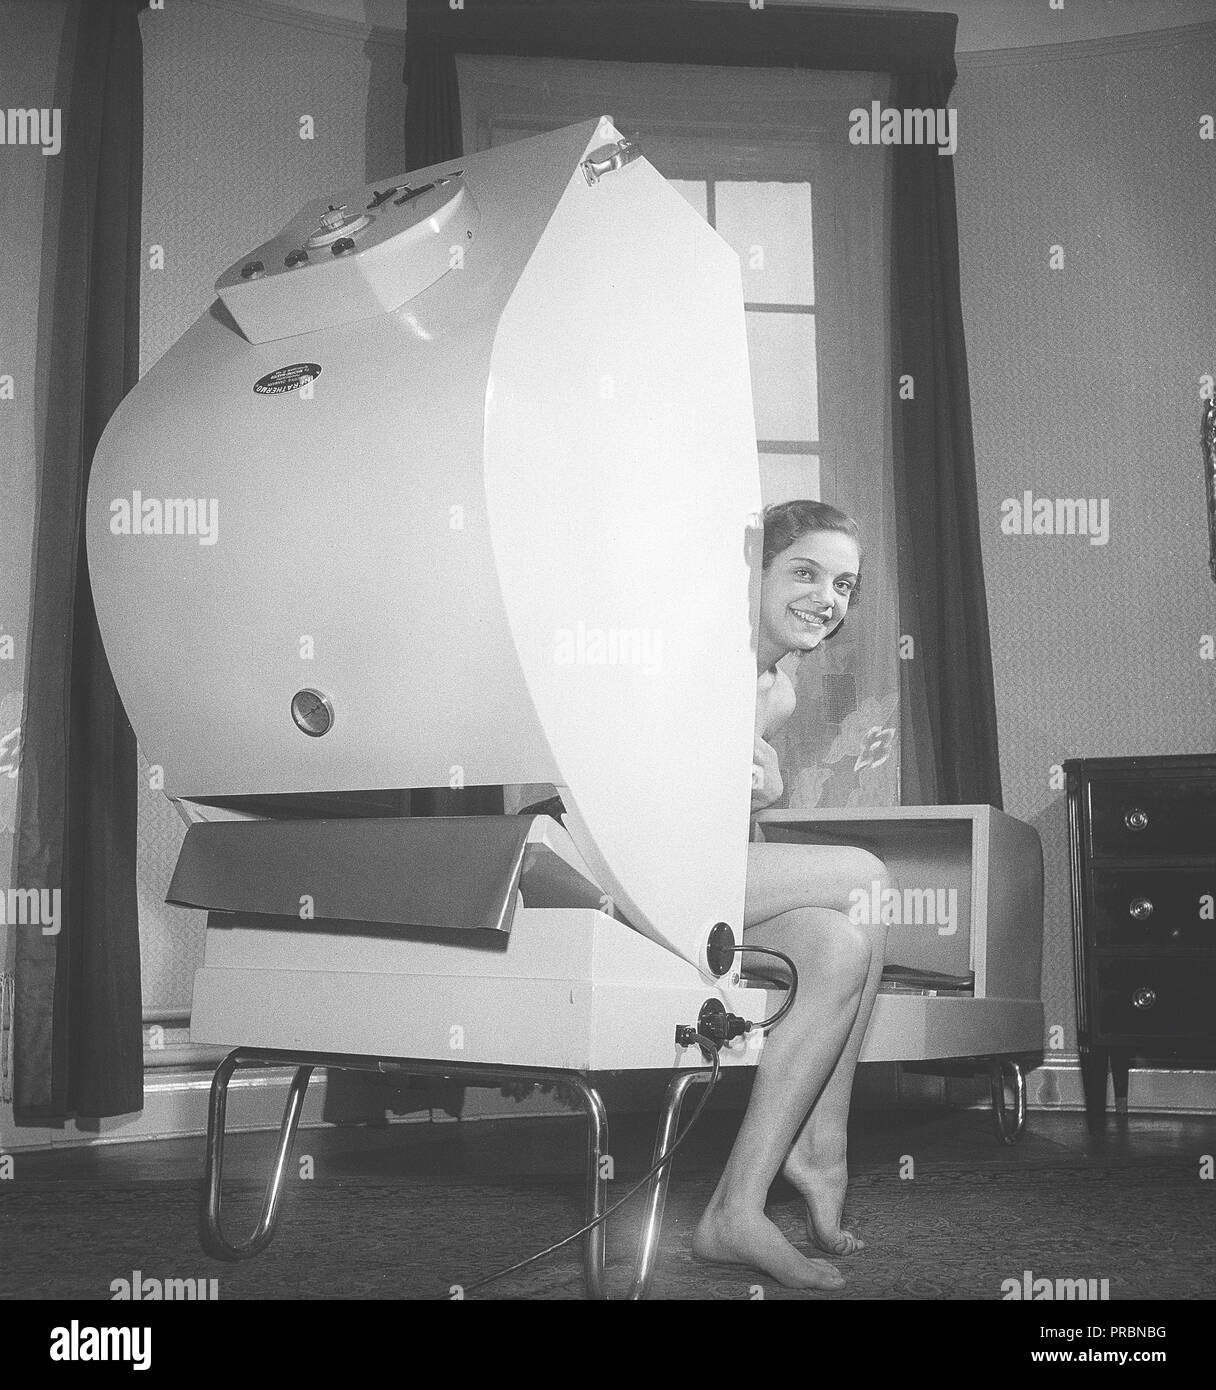 Soins de beauté en 1950s. Une jeune femme est assise dans une machine nommée Infra Thermo. Un traitement dans la machine soulage la douleur par les vagues de chaleur. Suède 1951. Photo Kristoffersson Réf. BB81-9 Banque D'Images